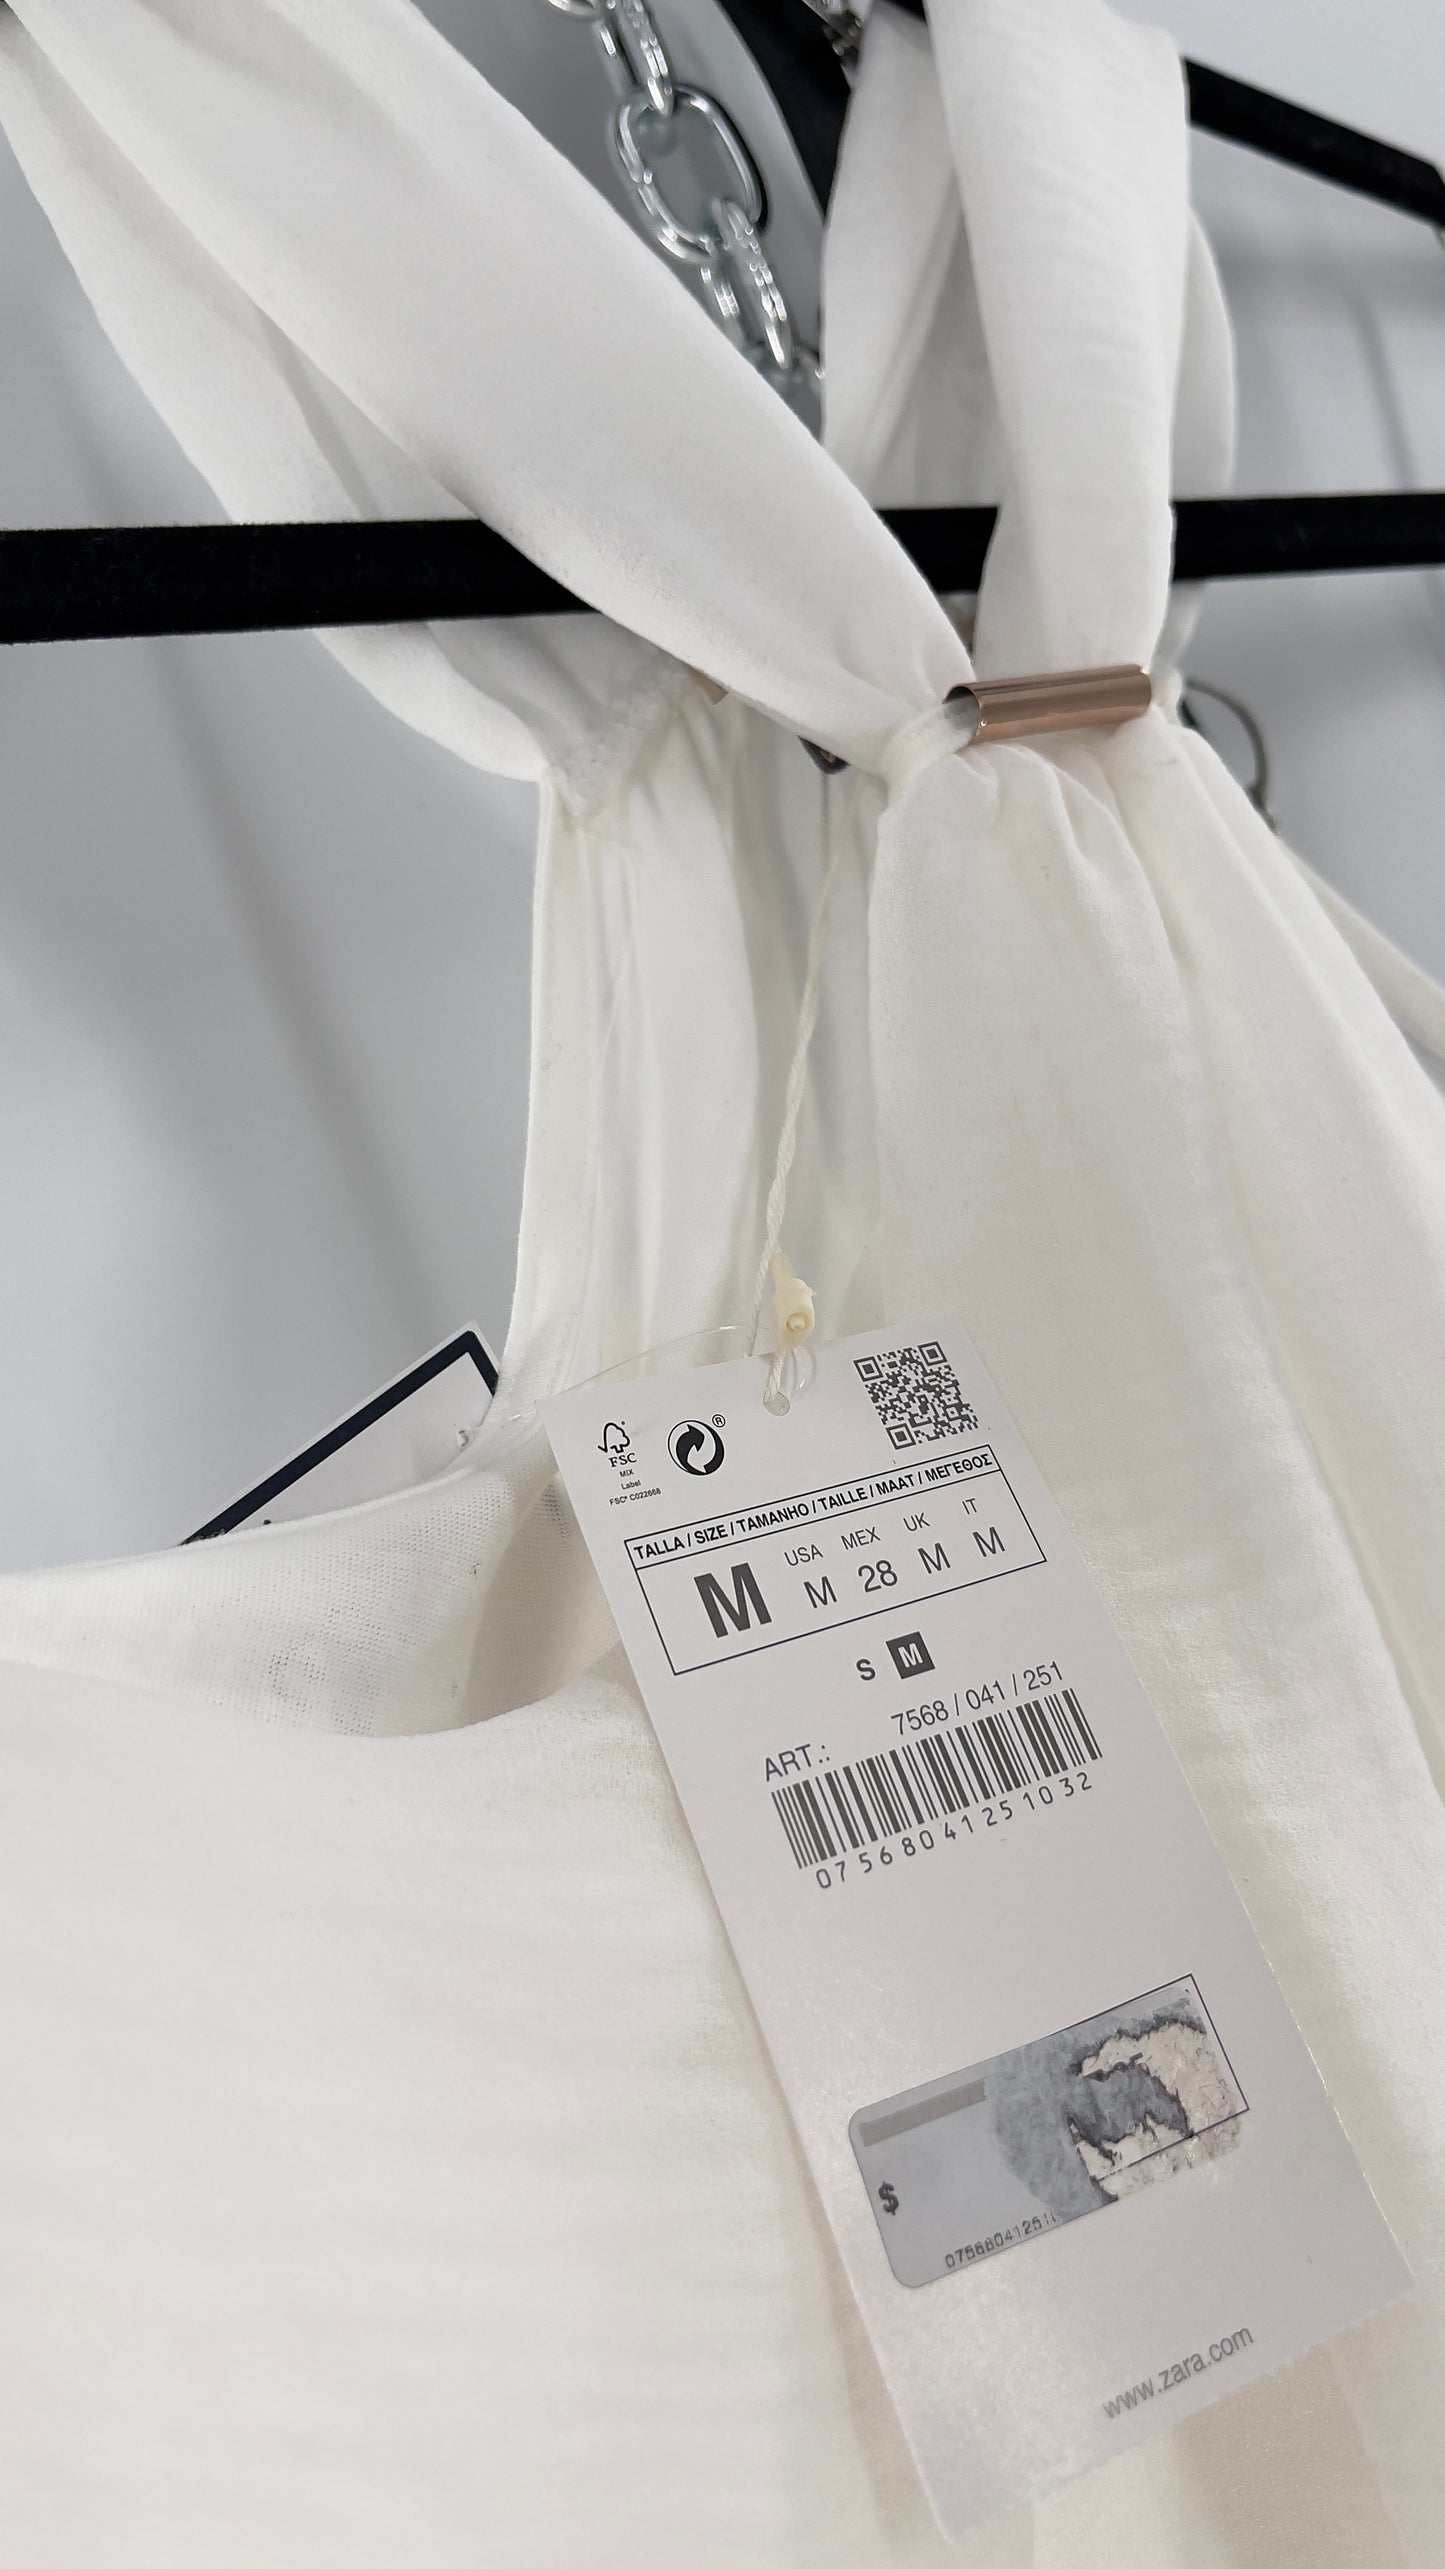 Zara White Halter Sleeveless Blouse with Metal Detailing (Medium)